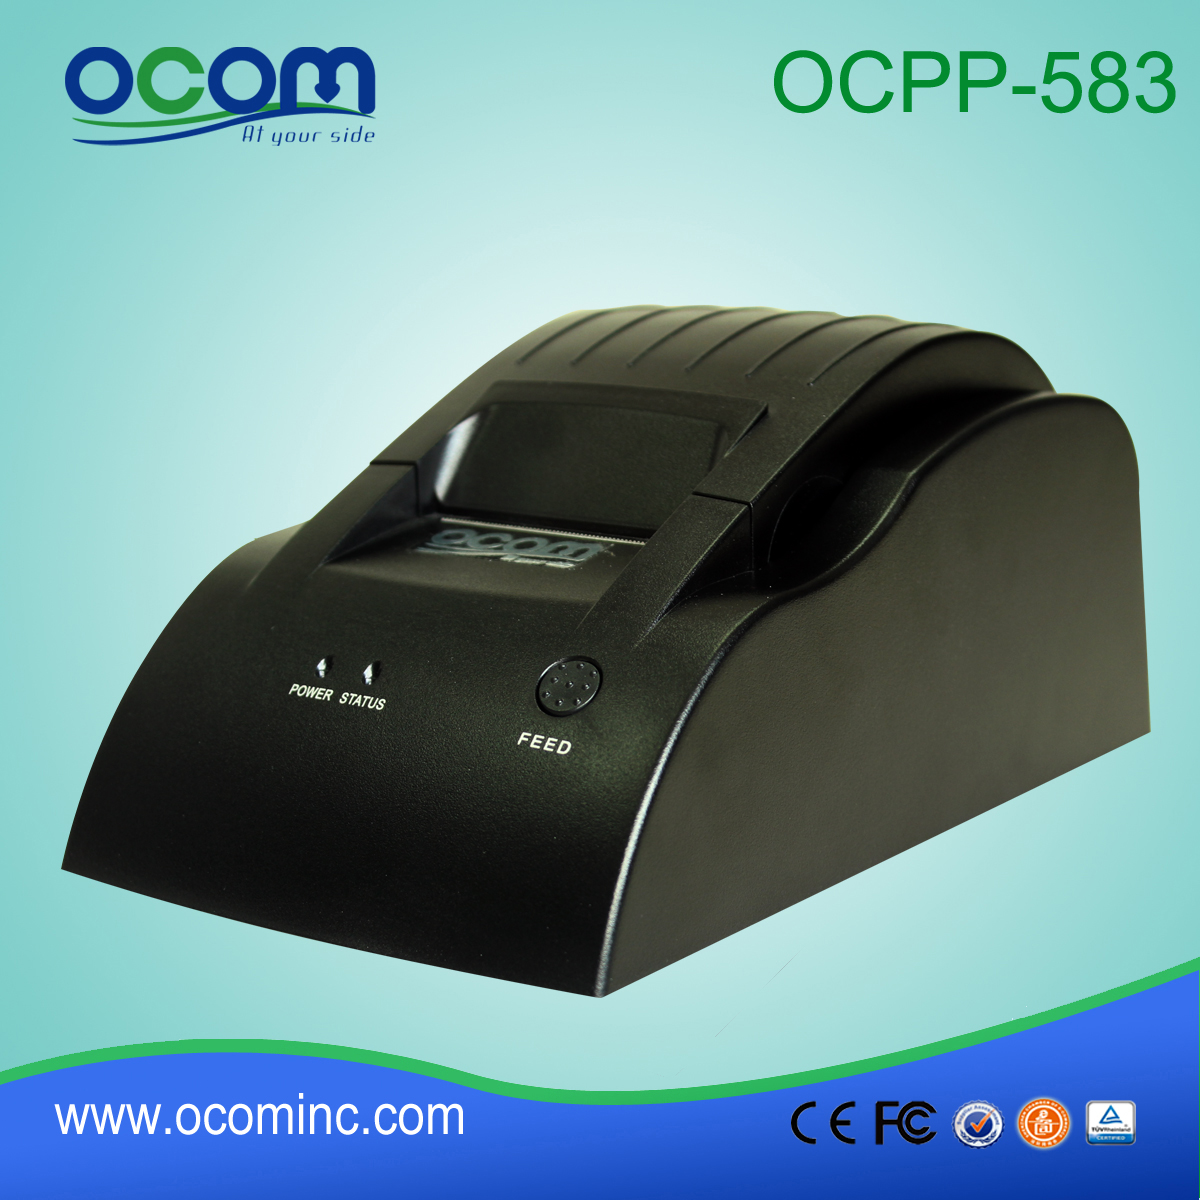 OCPP-583: 2015 niezawodny 58mm zasilania drukarka pokwitowań termiczne, drukarki pos